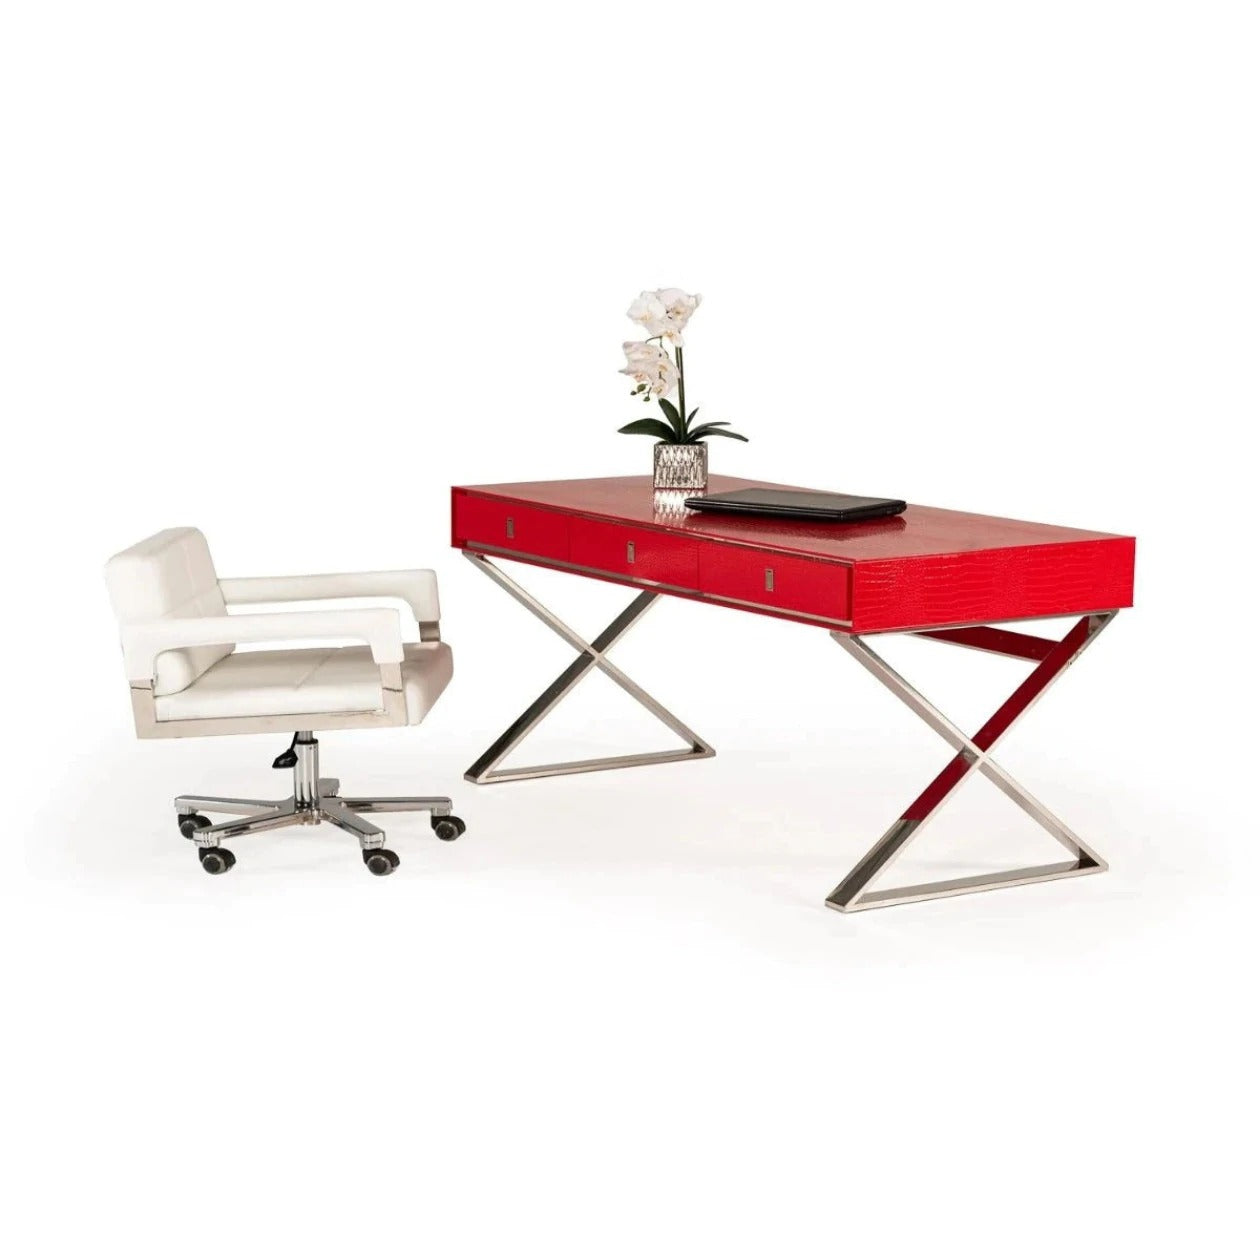 Office Desk Design, Best Computer Table Design For Home, Desk Design, Designer Desk, Computer Desk Design, Modern Executive Office Table Design, Executive Table Design